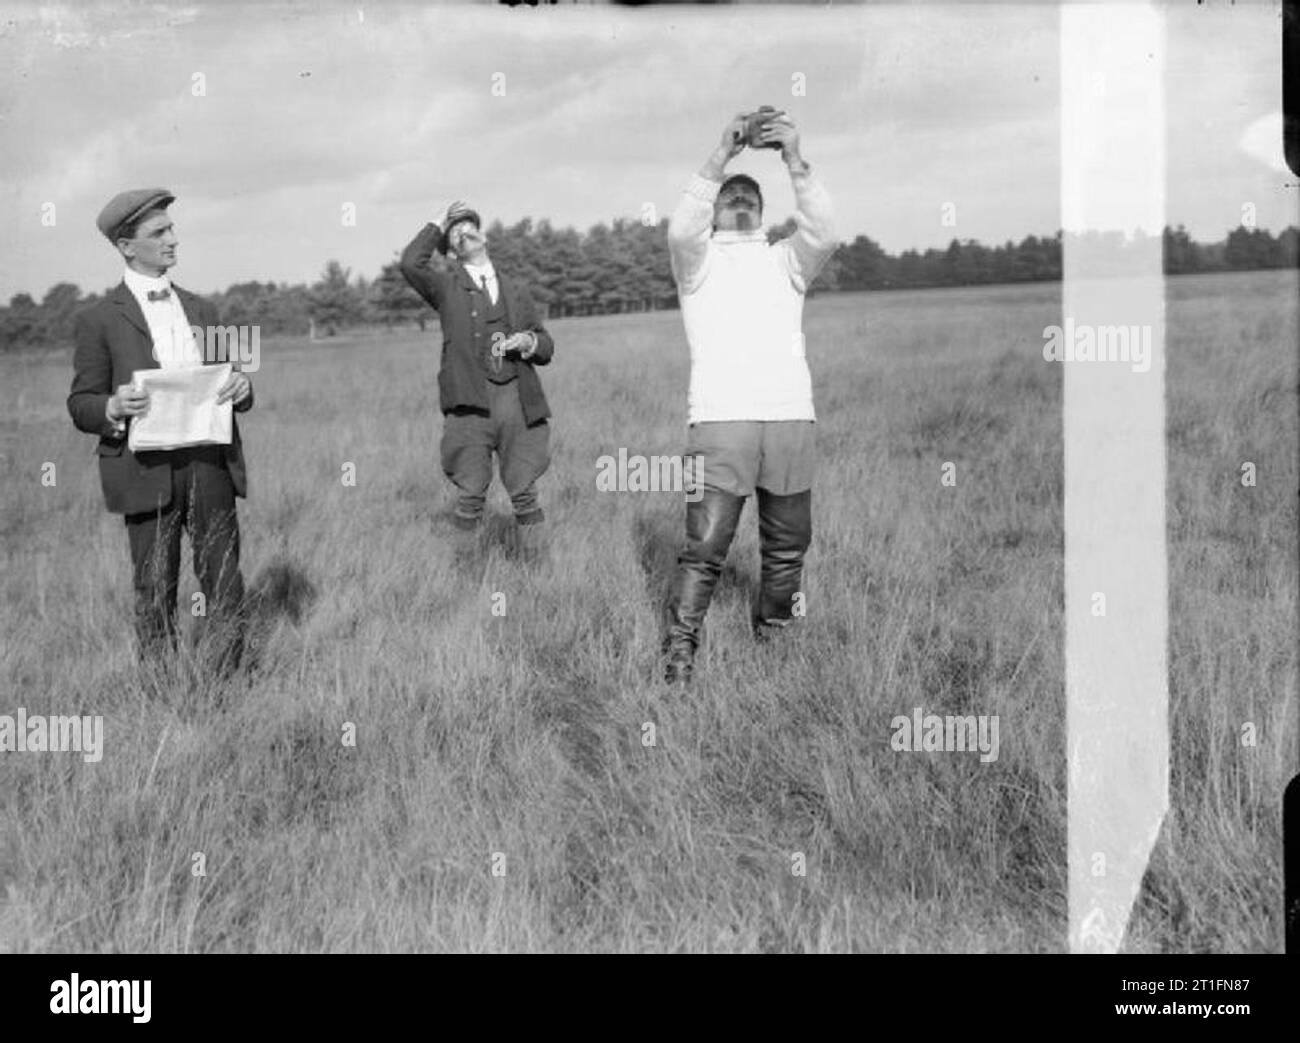 Luftfahrt in Großbritannien vor dem Ersten Weltkrieg Cody und zwei andere stand in einer Wiese möglicherweise die Messung der Windrichtung. Cody Tragen eines weißen Pullover und Oberschenkel Länge Stiefel hält sich eine Art kleinen Gerät. Stockfoto